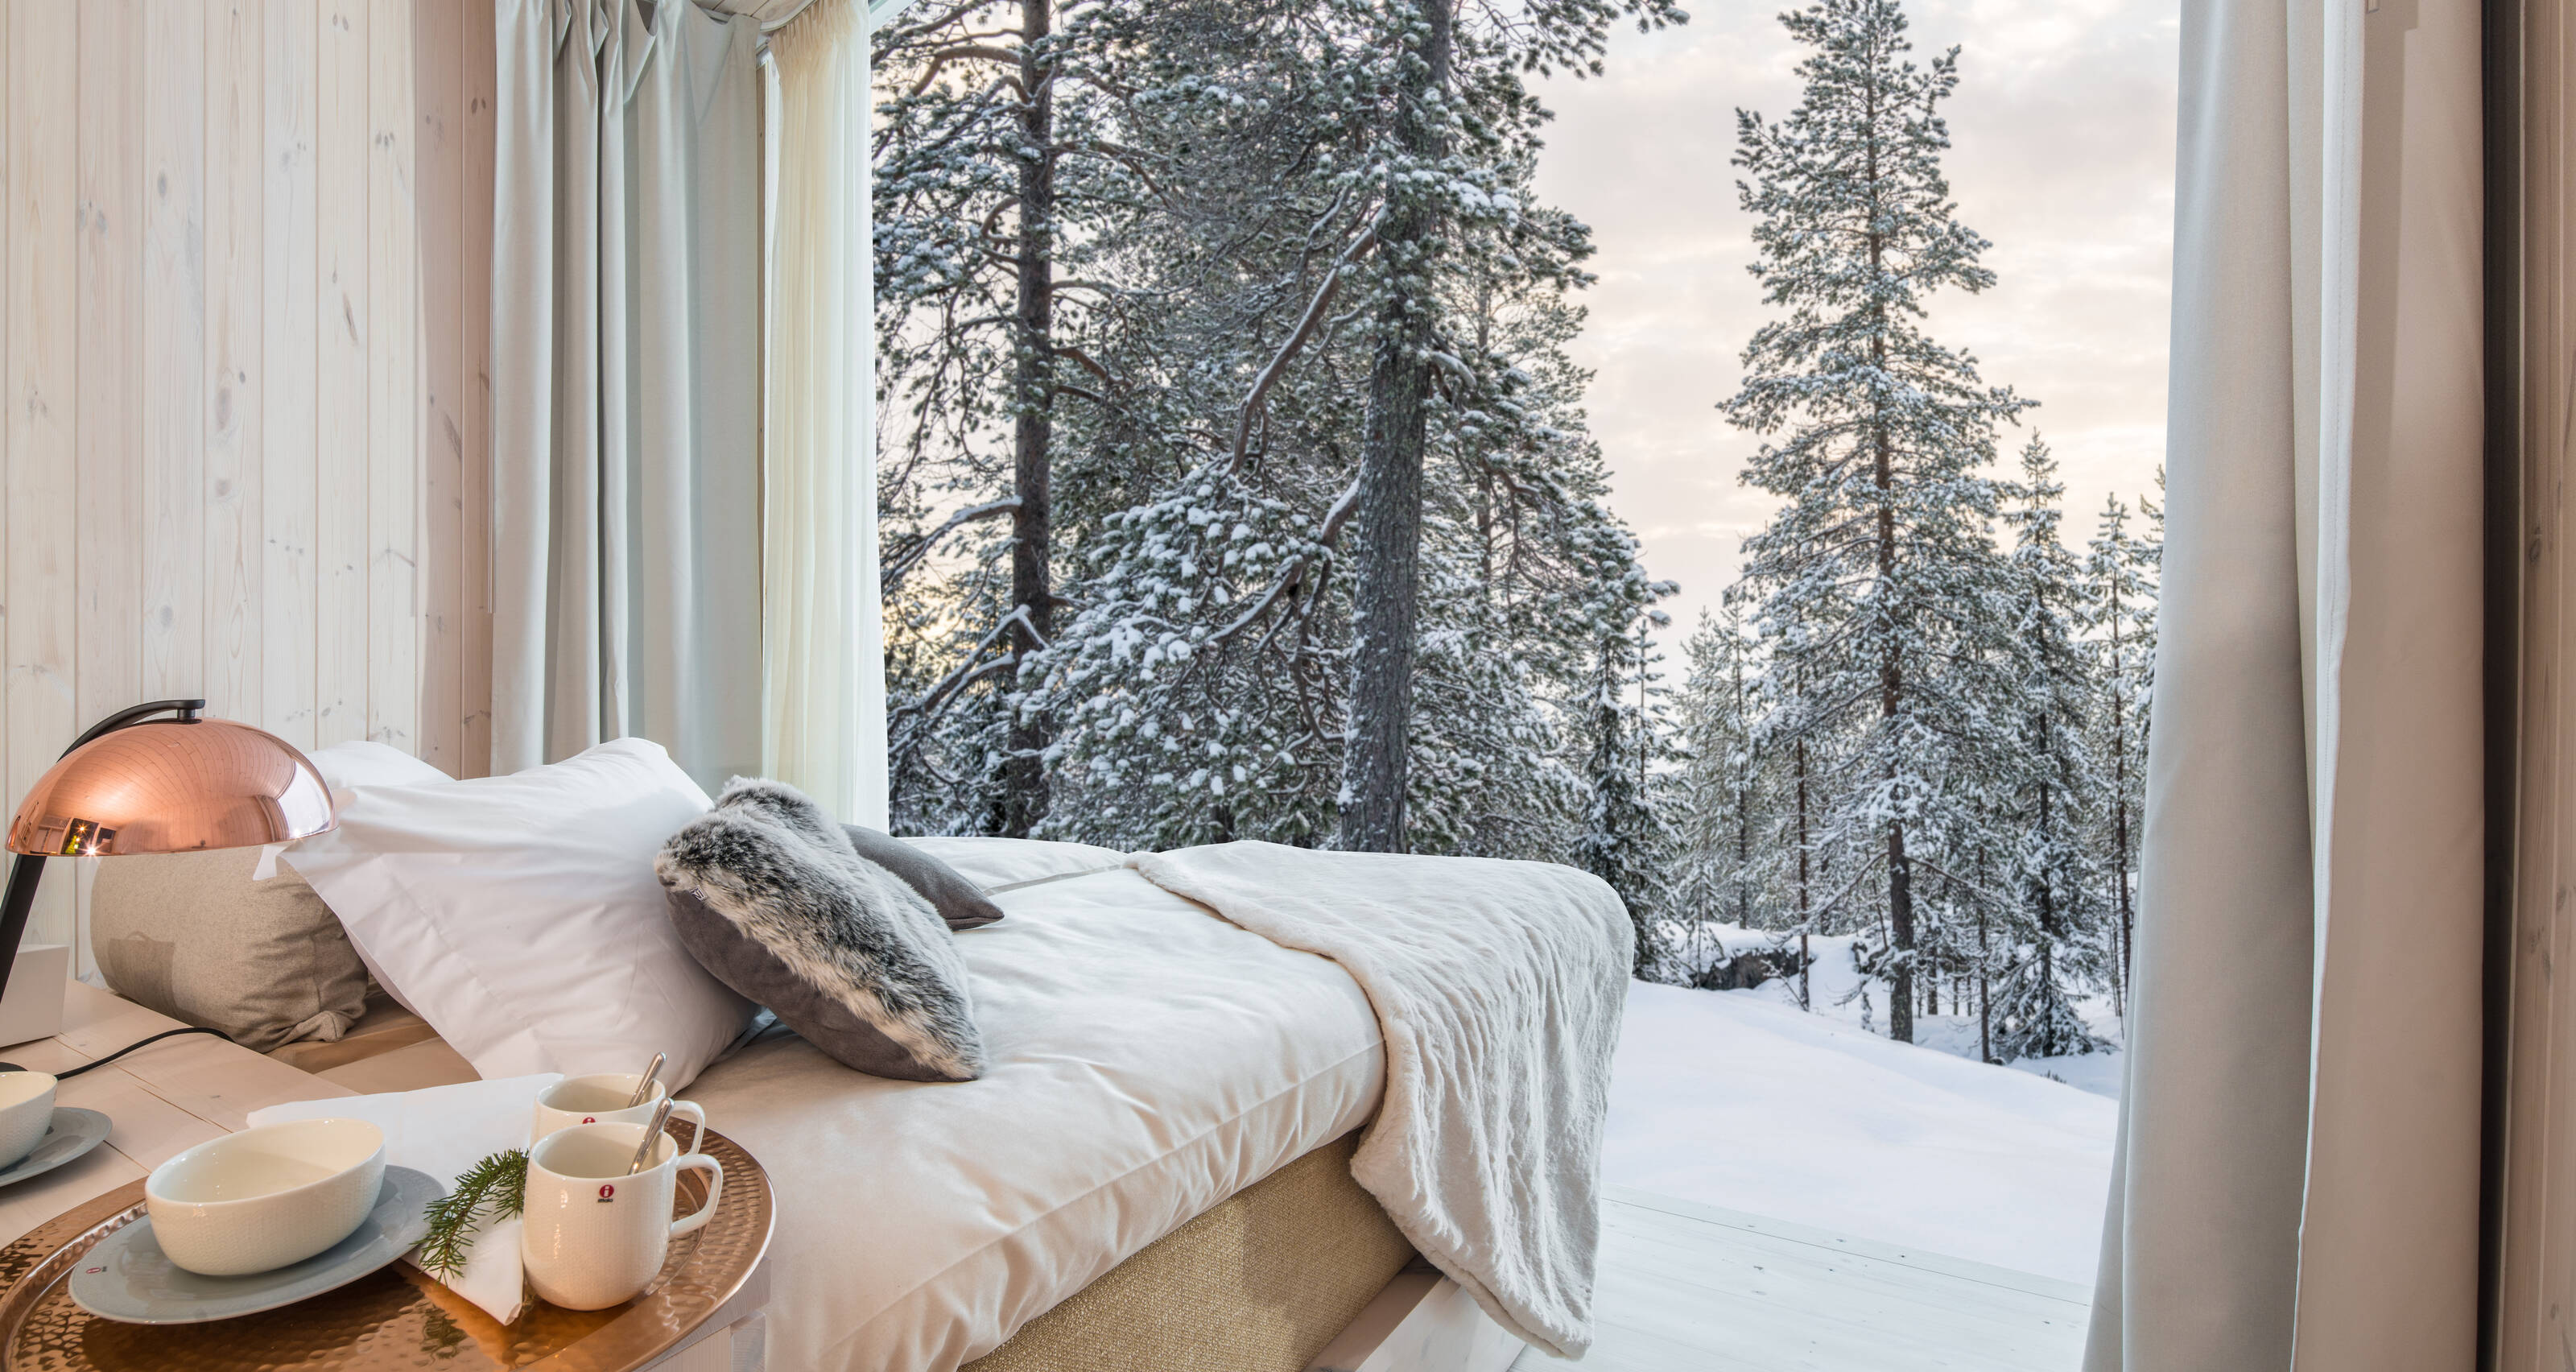 フィンランドの冬の森を望むホテルのスイートルームの写真